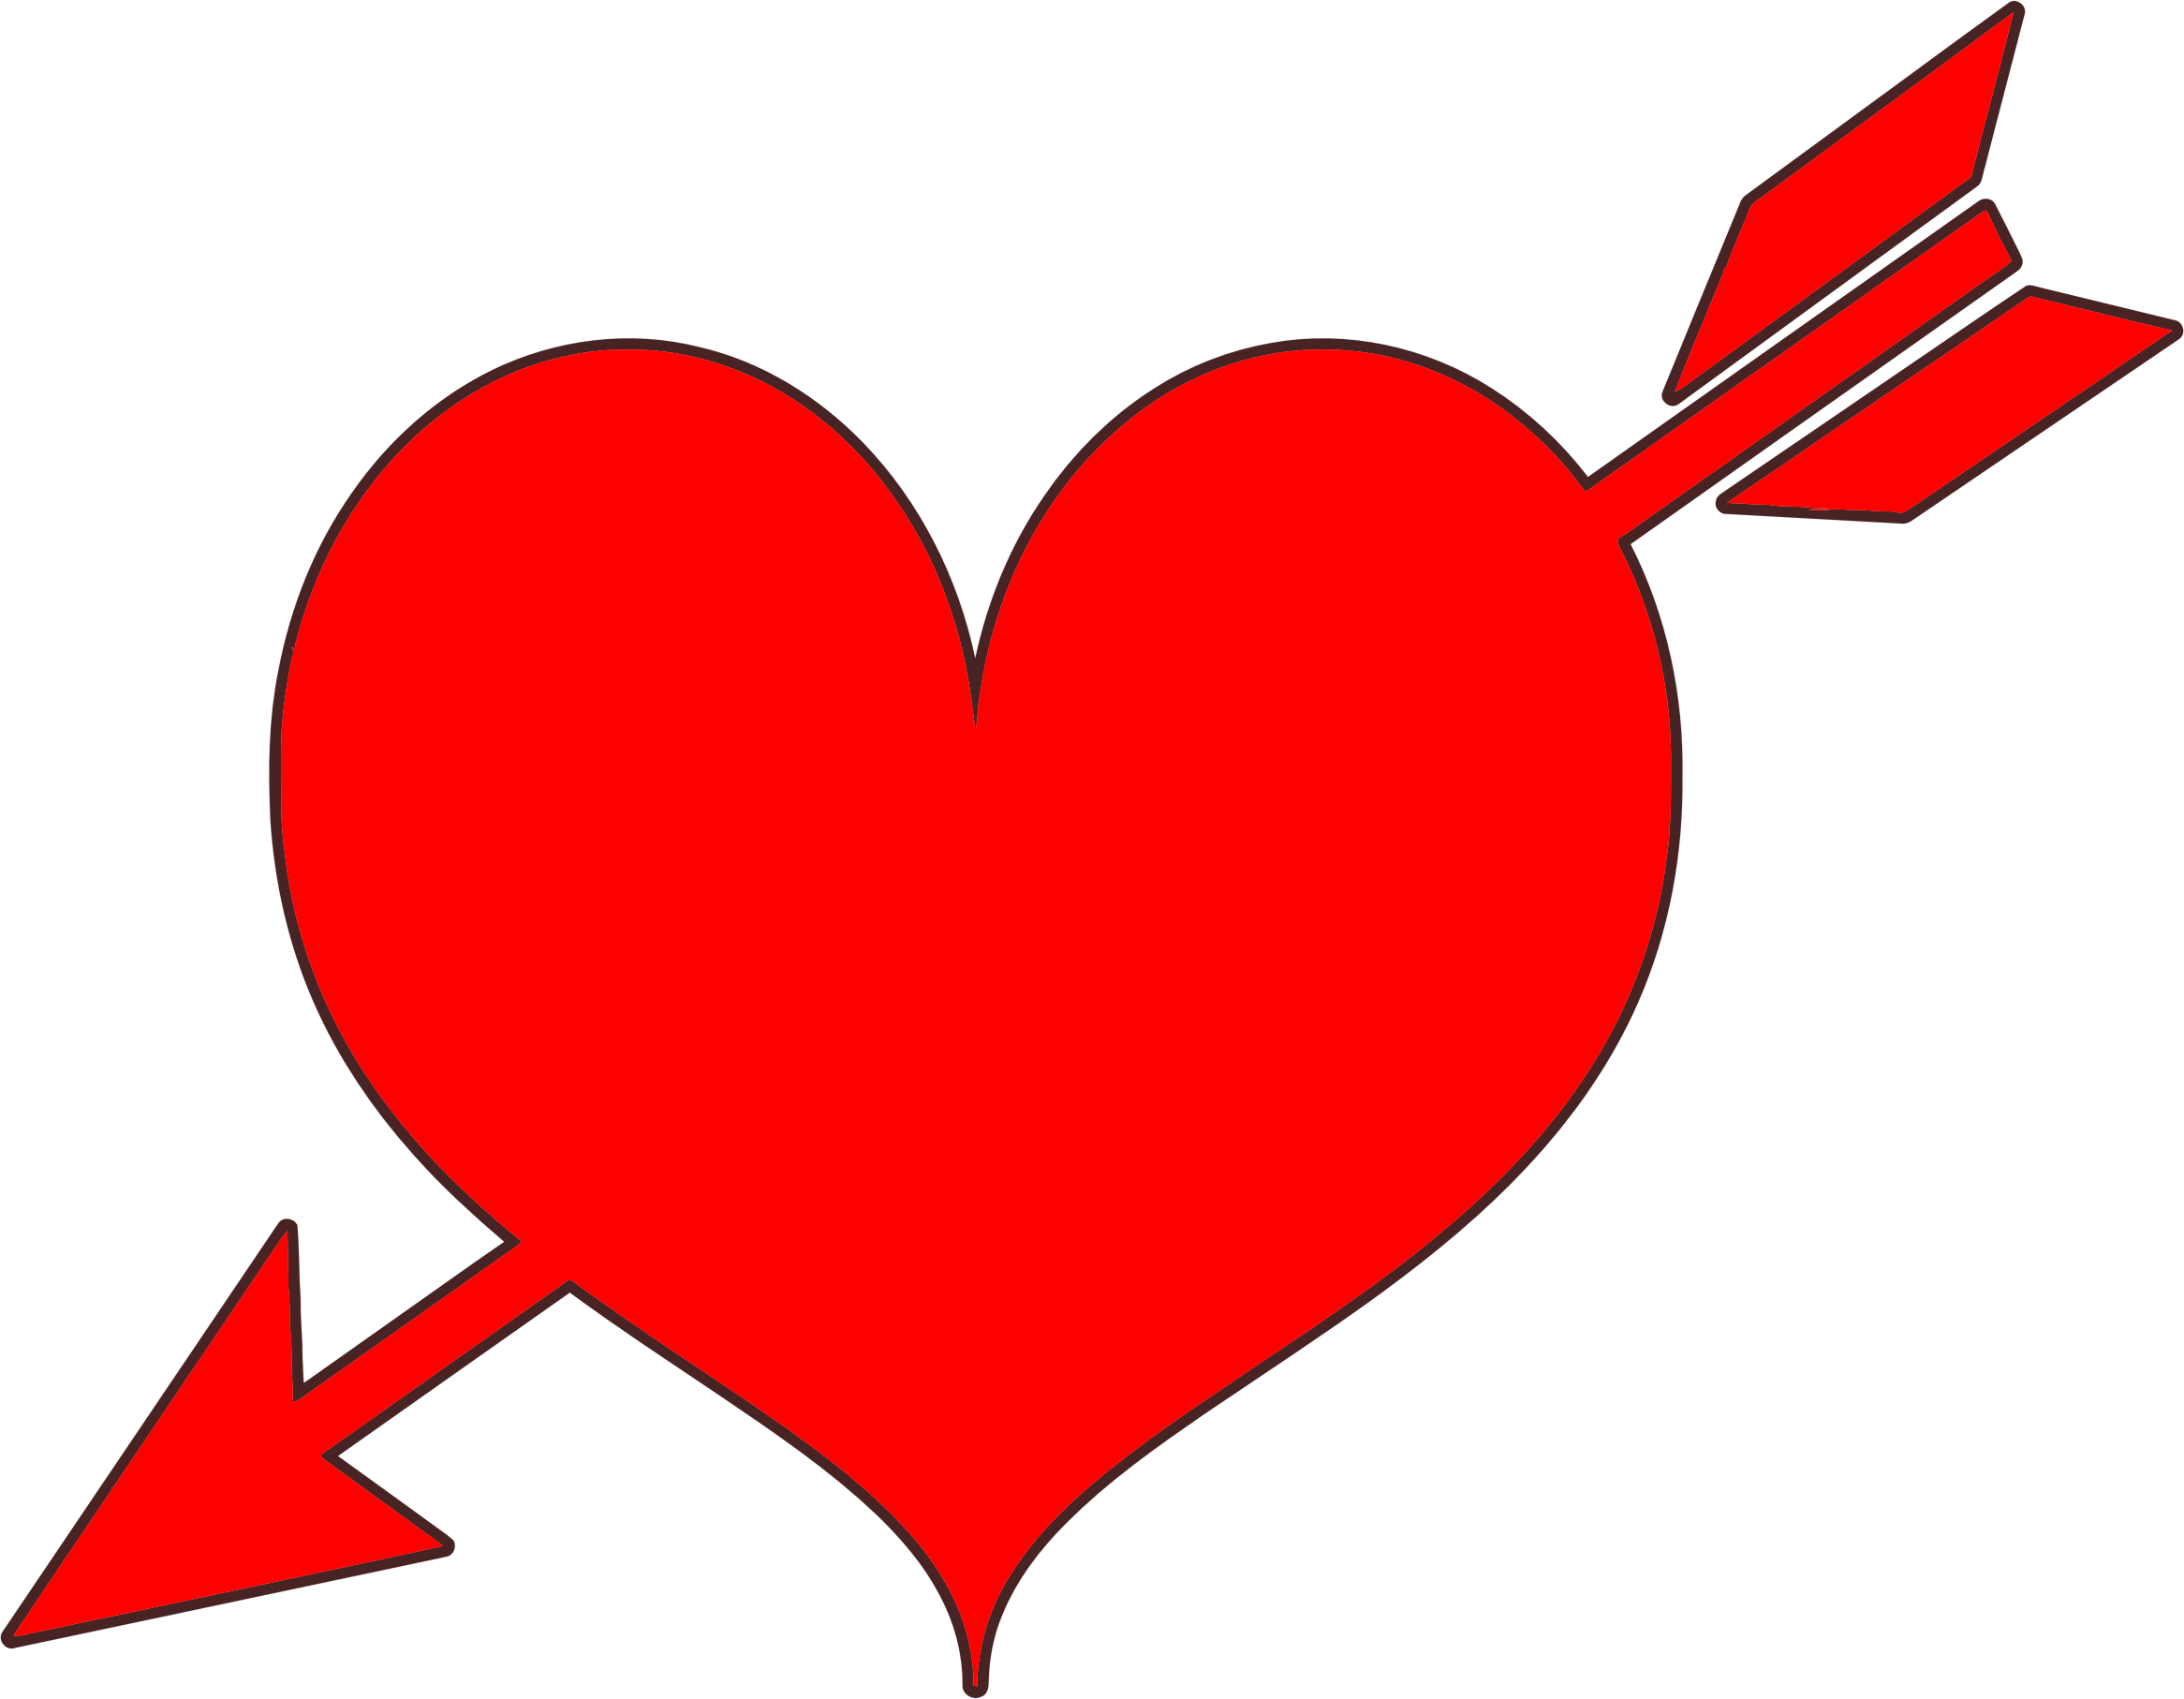 Heart Arrow - Red Heart With Arrow (2332x1814)